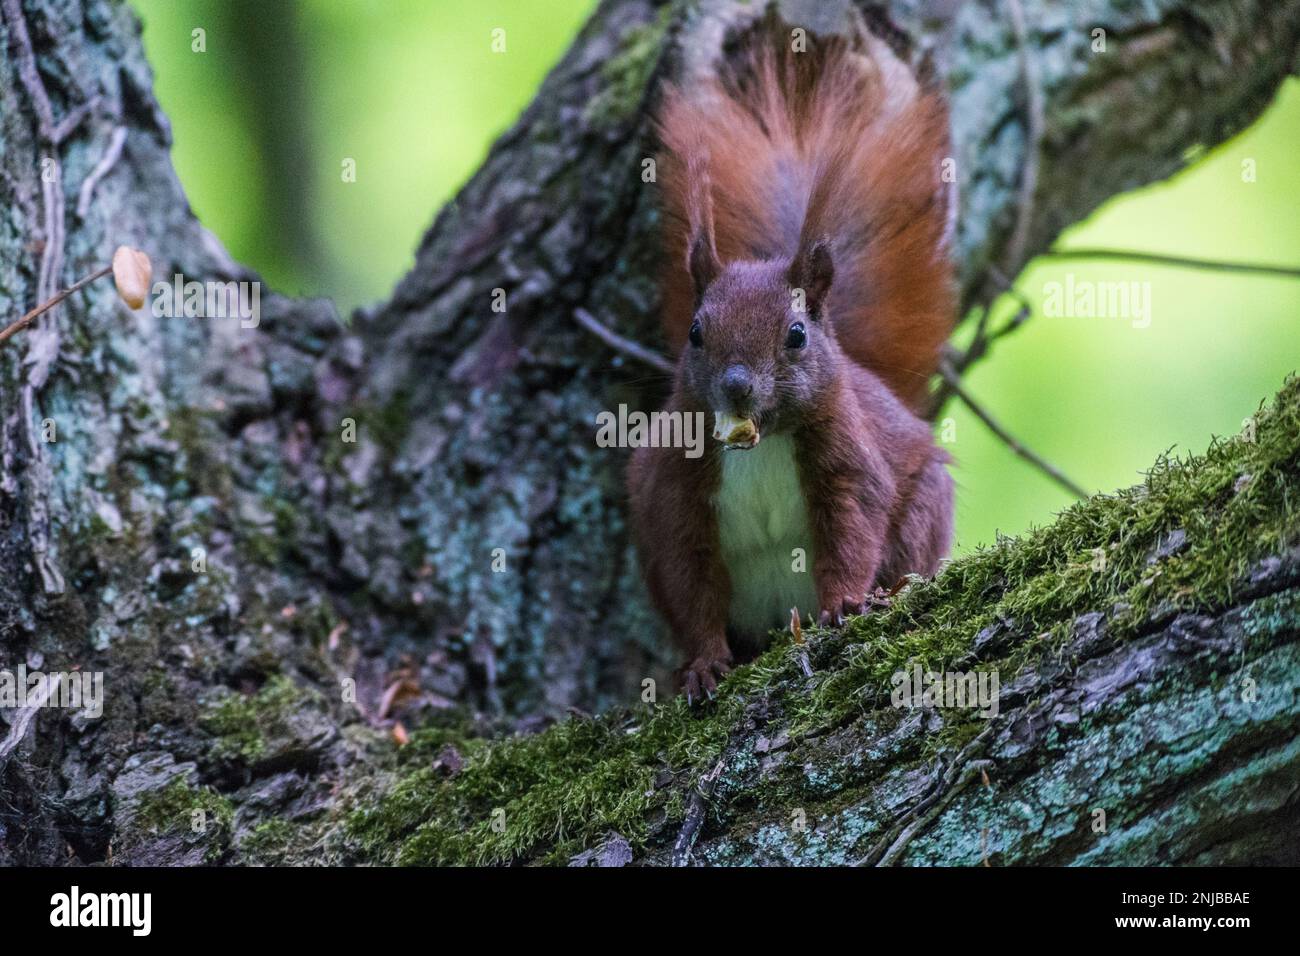 Eurasisches Eichhörnchen auf Ast sitzend und eine Eichel futternd - Eurasisches rotes Eichhörnchen, das auf einem Ast sitzt und eine Eichel isst, Hintergrund verschwommen Stockfoto